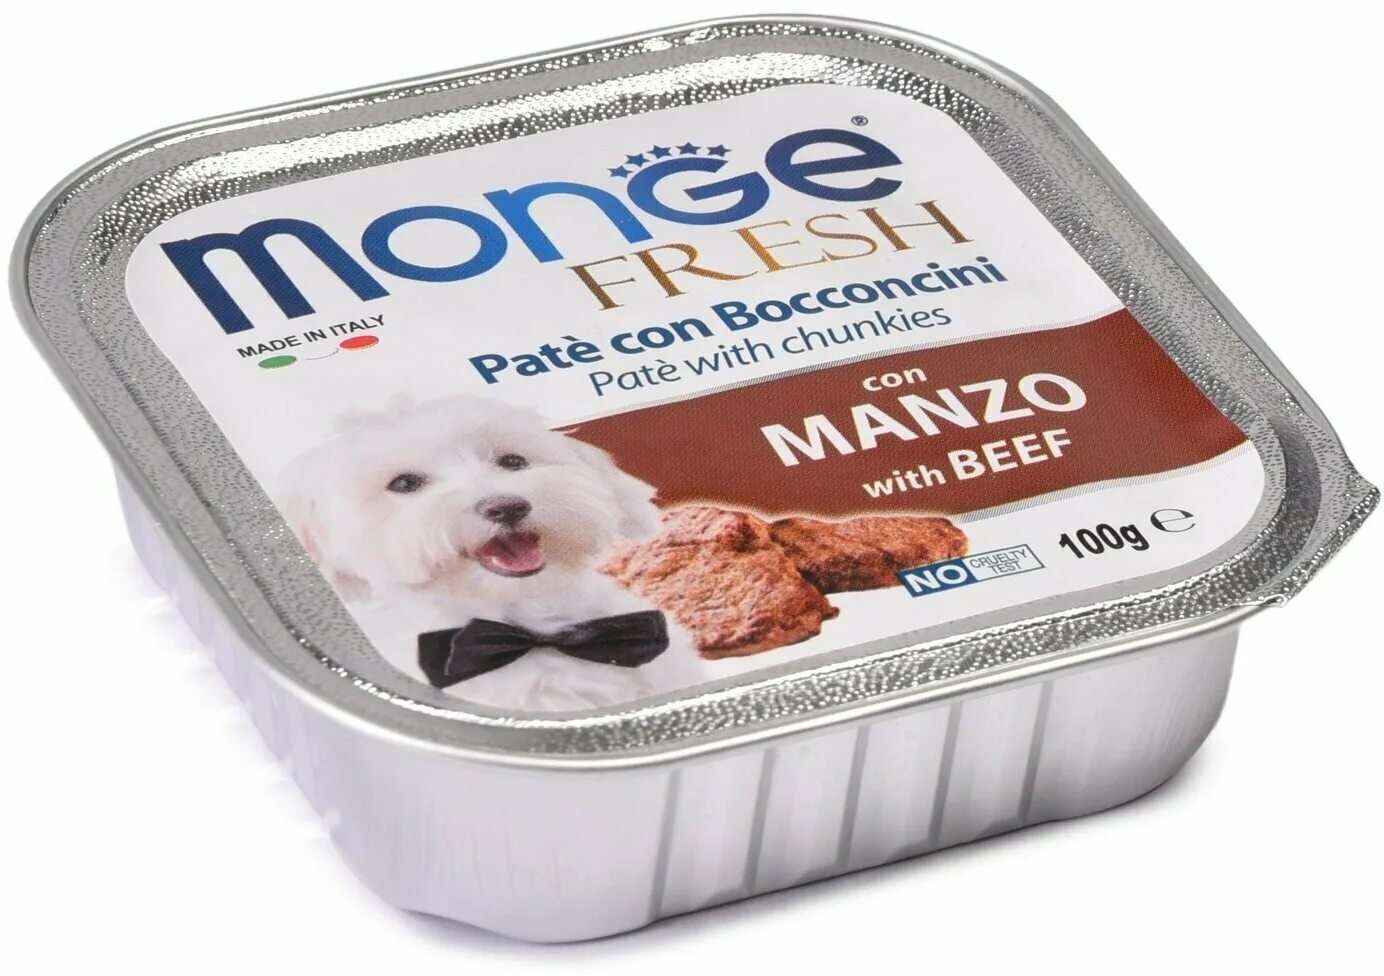 Купить корм паштет. Monge Dog Fresh консервы для собак говядина 100г. Влажный корм Monge Dog Fresh для собак, с говядиной, консервы 100 г. Монж корм для собак паштет. Корм Monge Dog Fresh для собак паштет с говядиной.